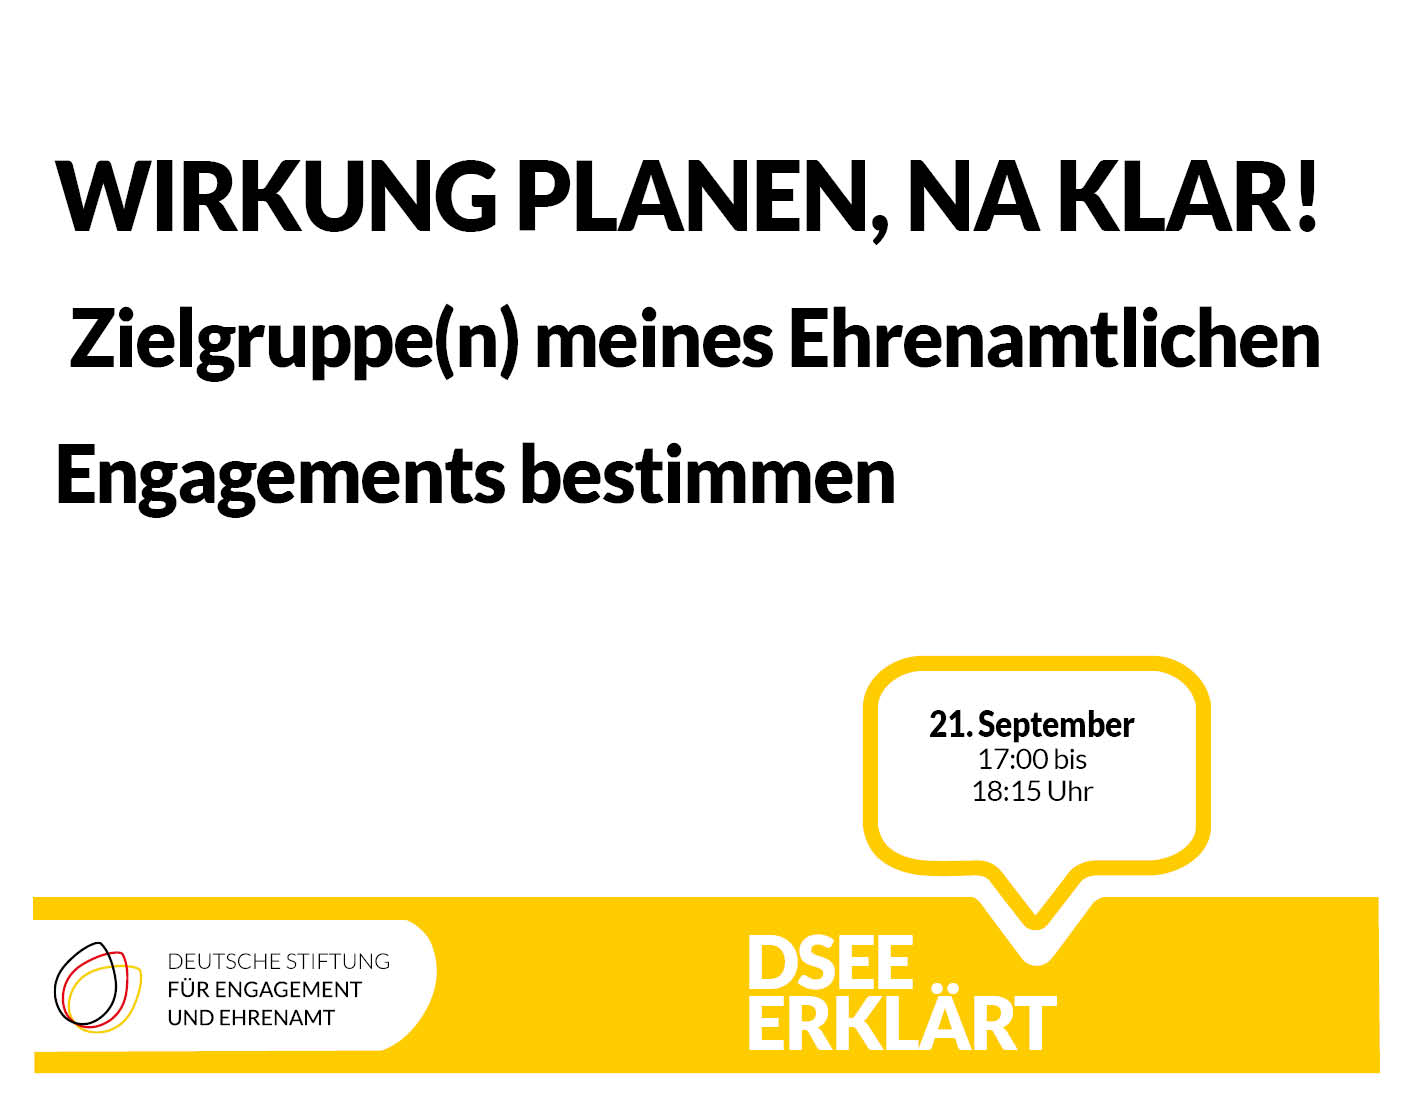 Grafik mit dem Text: Wirkung planen, na klar! Zielgruppen meines ehrenamtlichen Engagementbs bestimmen. 21. September 2022, 17:00 - 18:15 Uhr